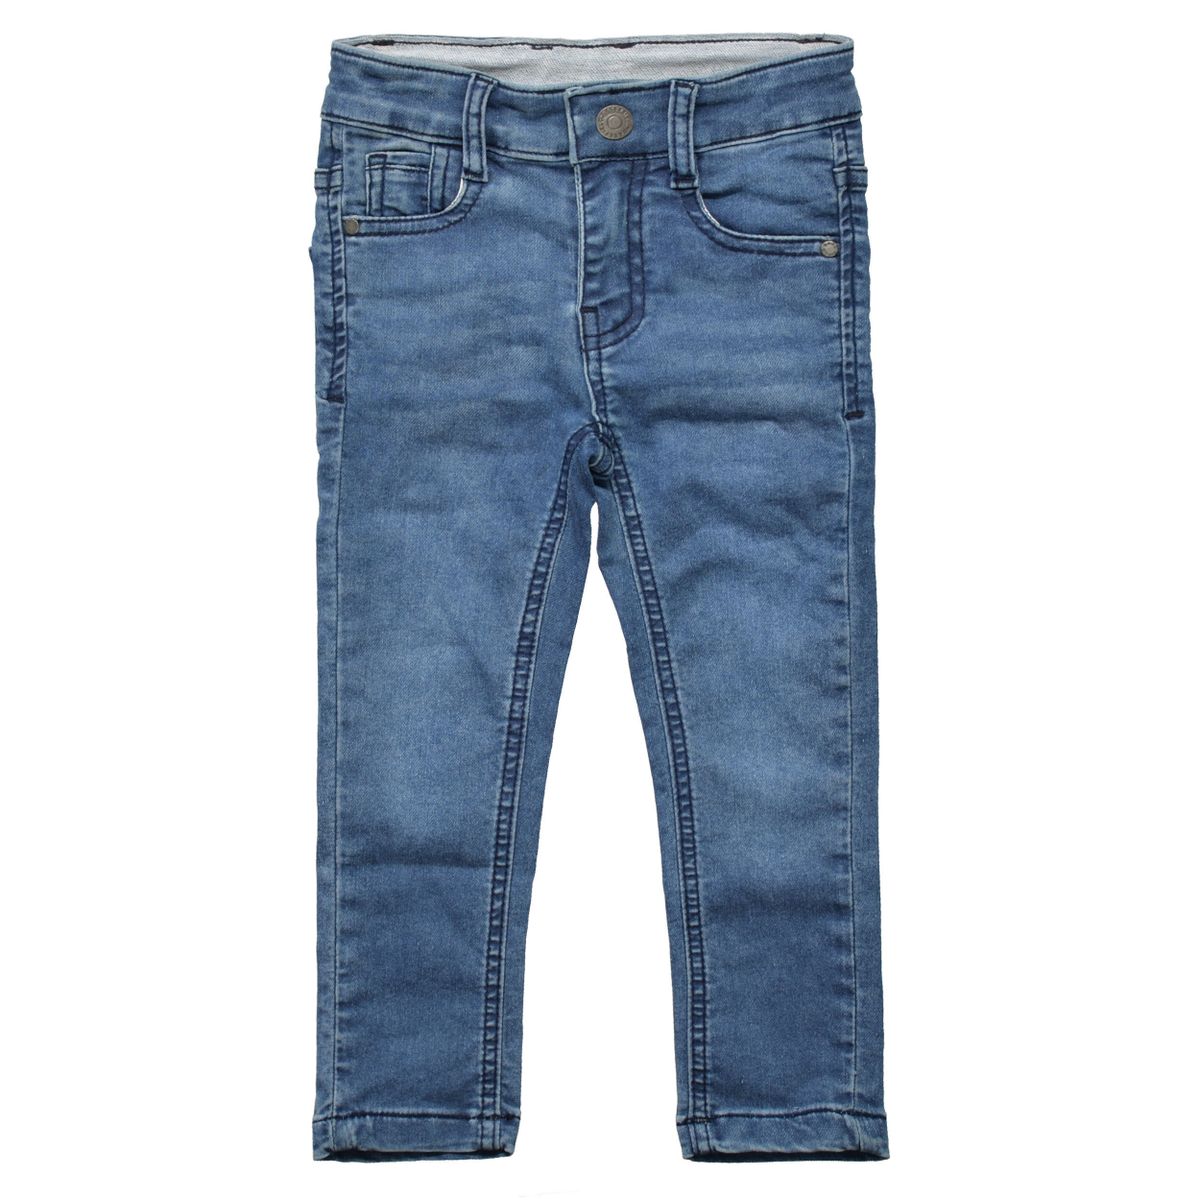 Jungen Jeans mit verwaschener Optik - Mid Blue Denim